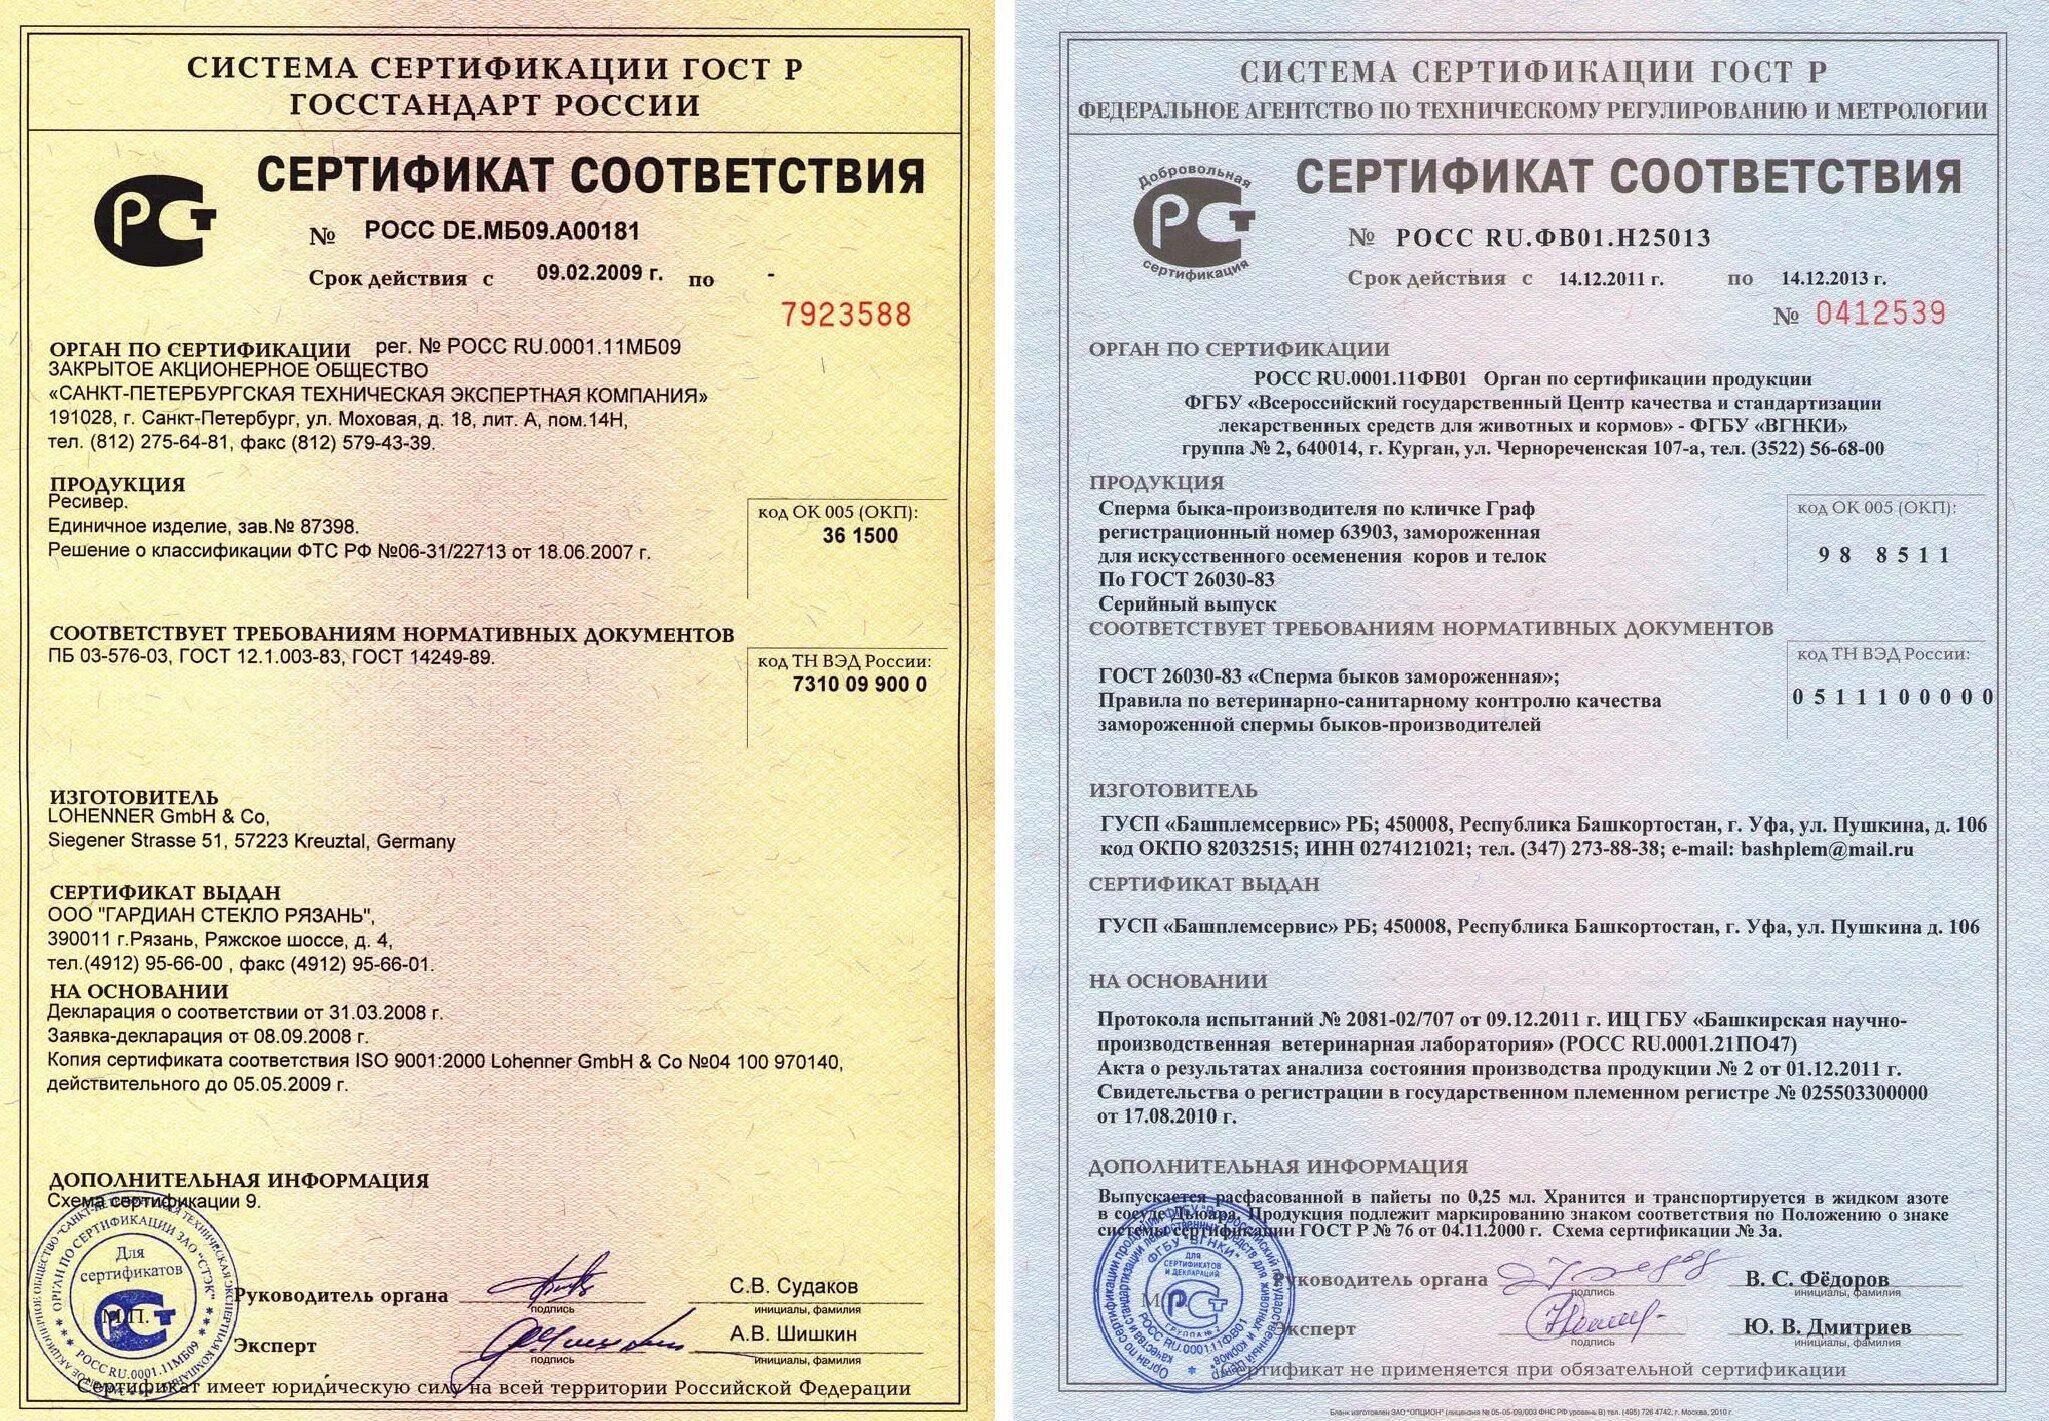 Шпаклевка сертификат. Смола эпоксидная Эд-20 сертификат соответствия. Смола Эд-20 сертификат соответствия. Сертификат cоответствия Epoxy Master смола.